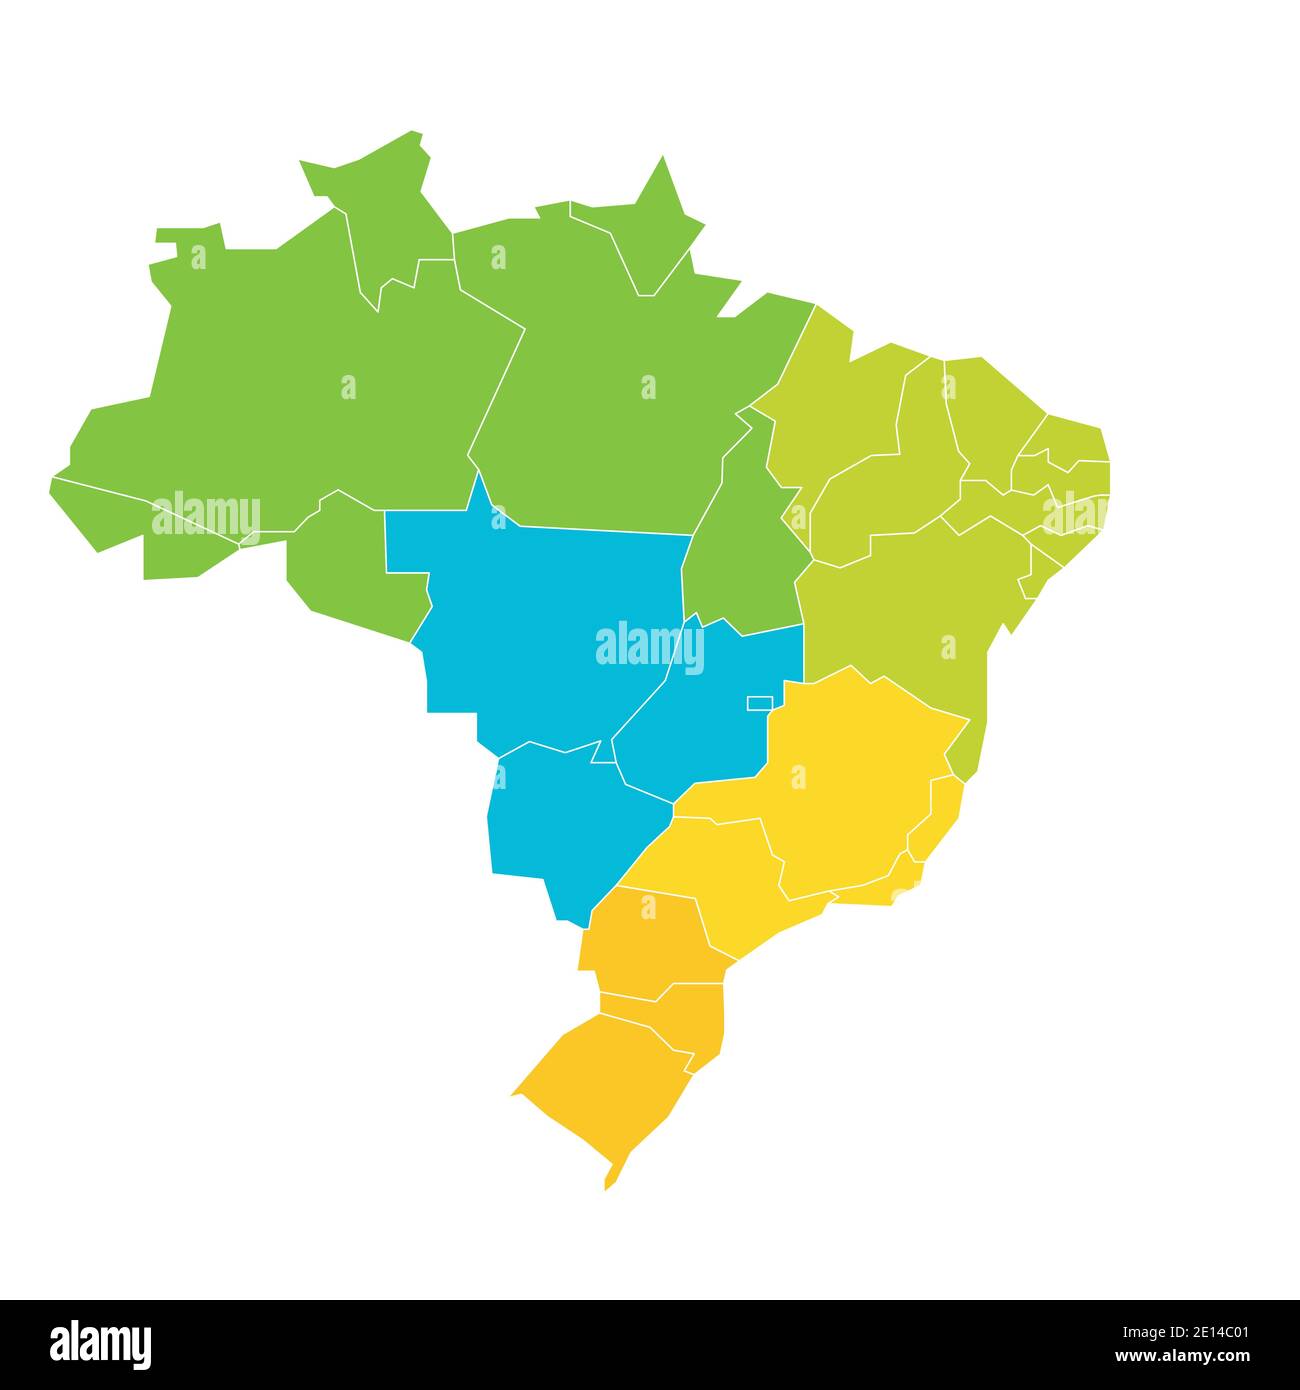 Bunte leere politische Karte von Brasilien. Staaten teilen sich durch Farbe in 5 Regionen. Einfache flache Vektorkarte. Stock Vektor